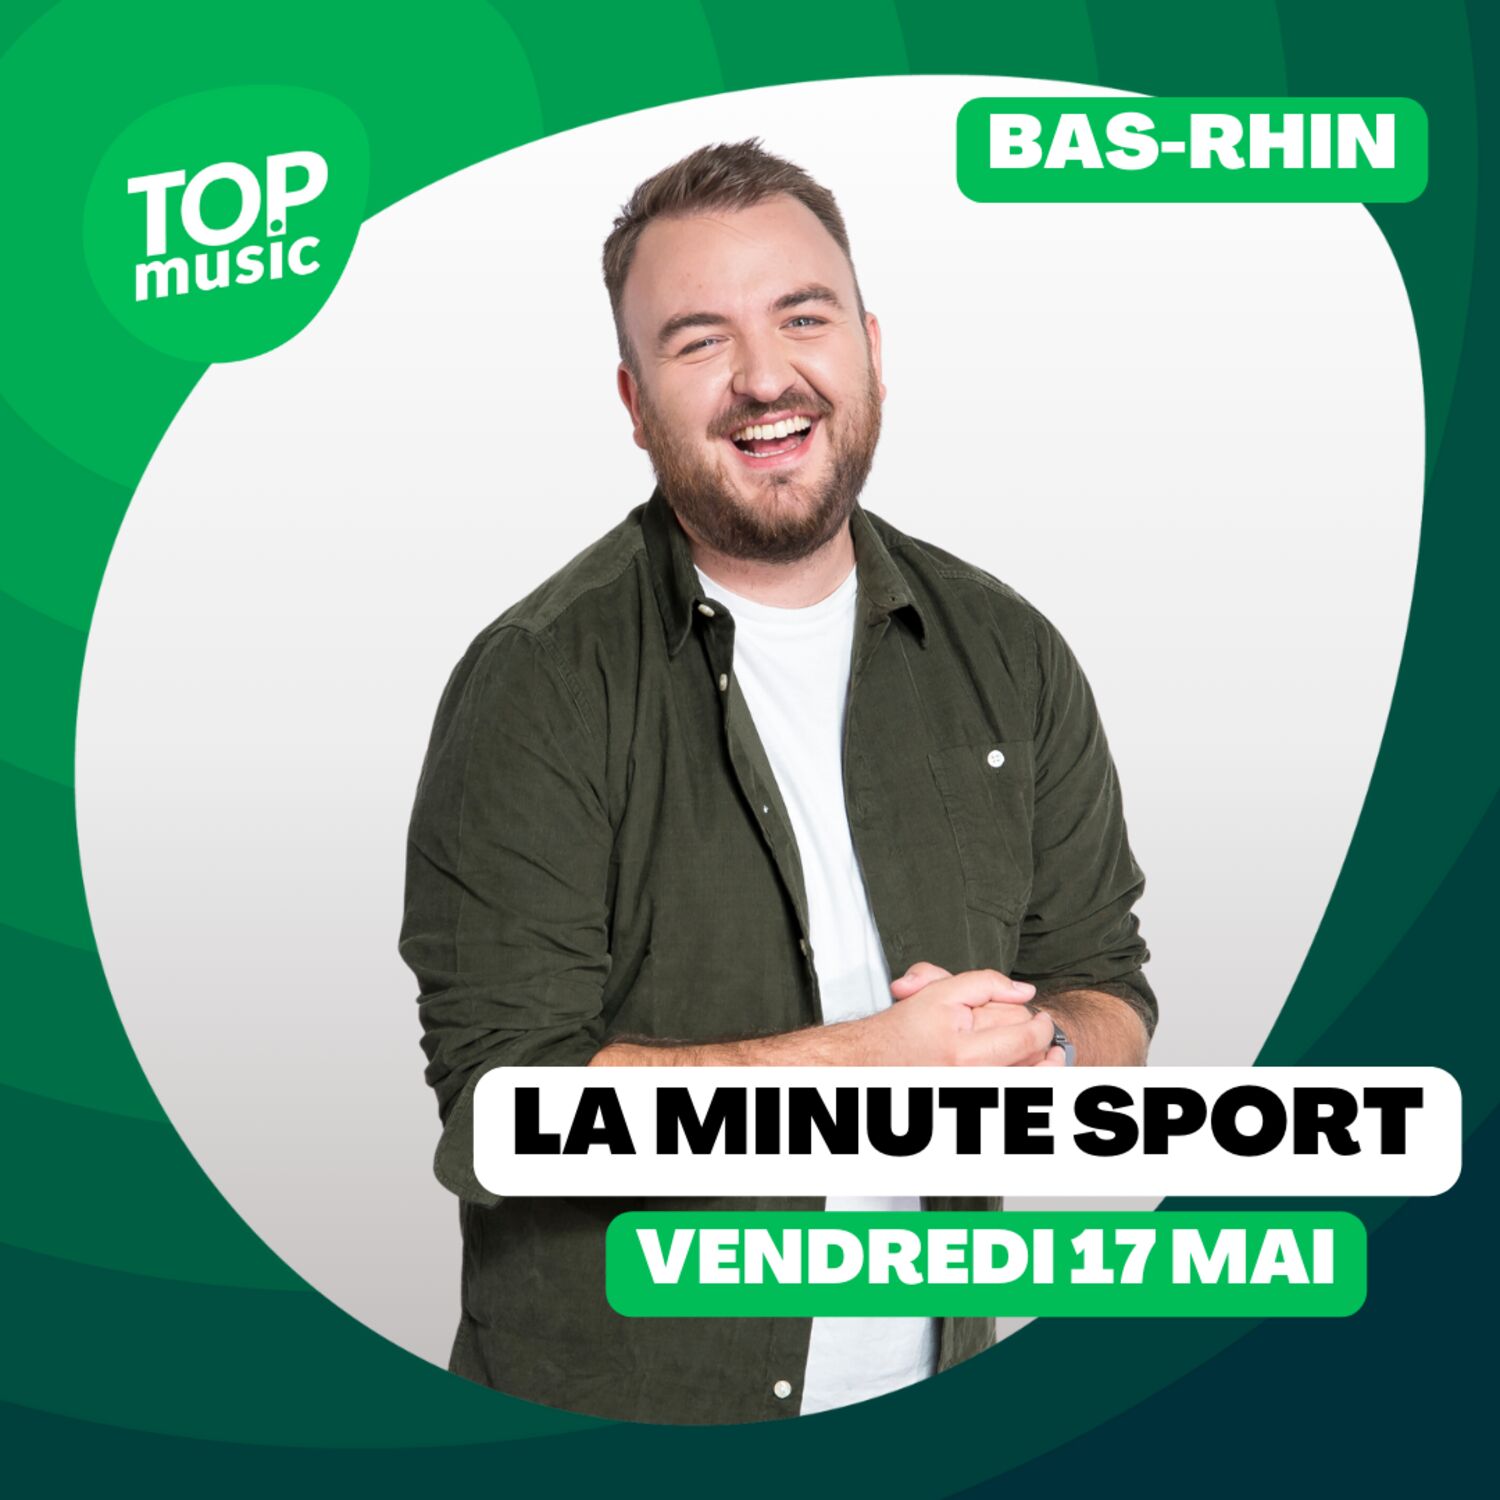 La Minute sport du Bas-Rhin - vendredi 17 mai